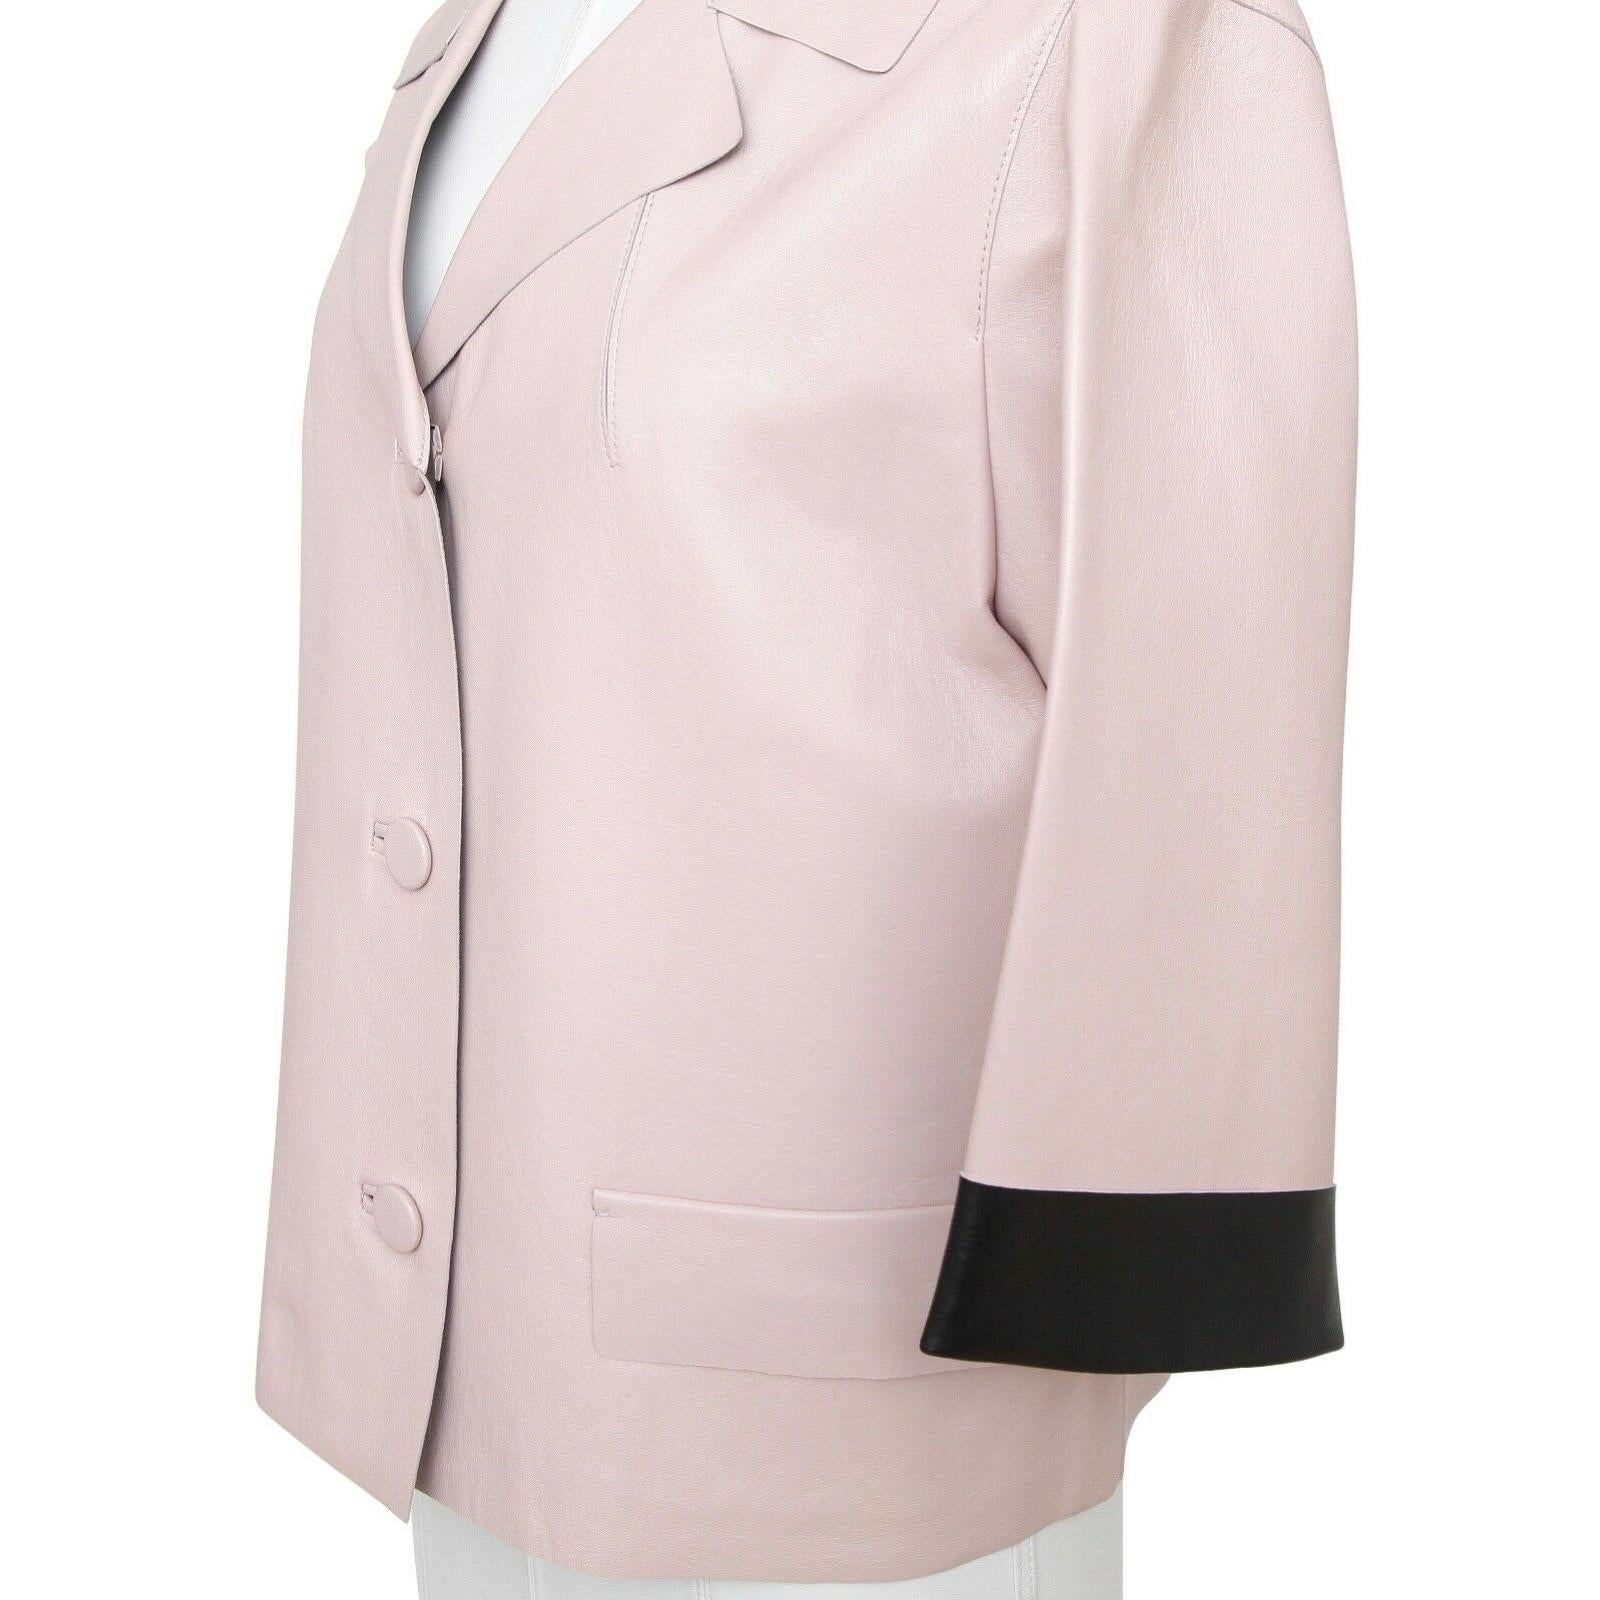 Beige MARNI Jacket Leather Coat Blush Pink Black 3/4 Sleeve Pocket Sz 44 Summer 2014 For Sale